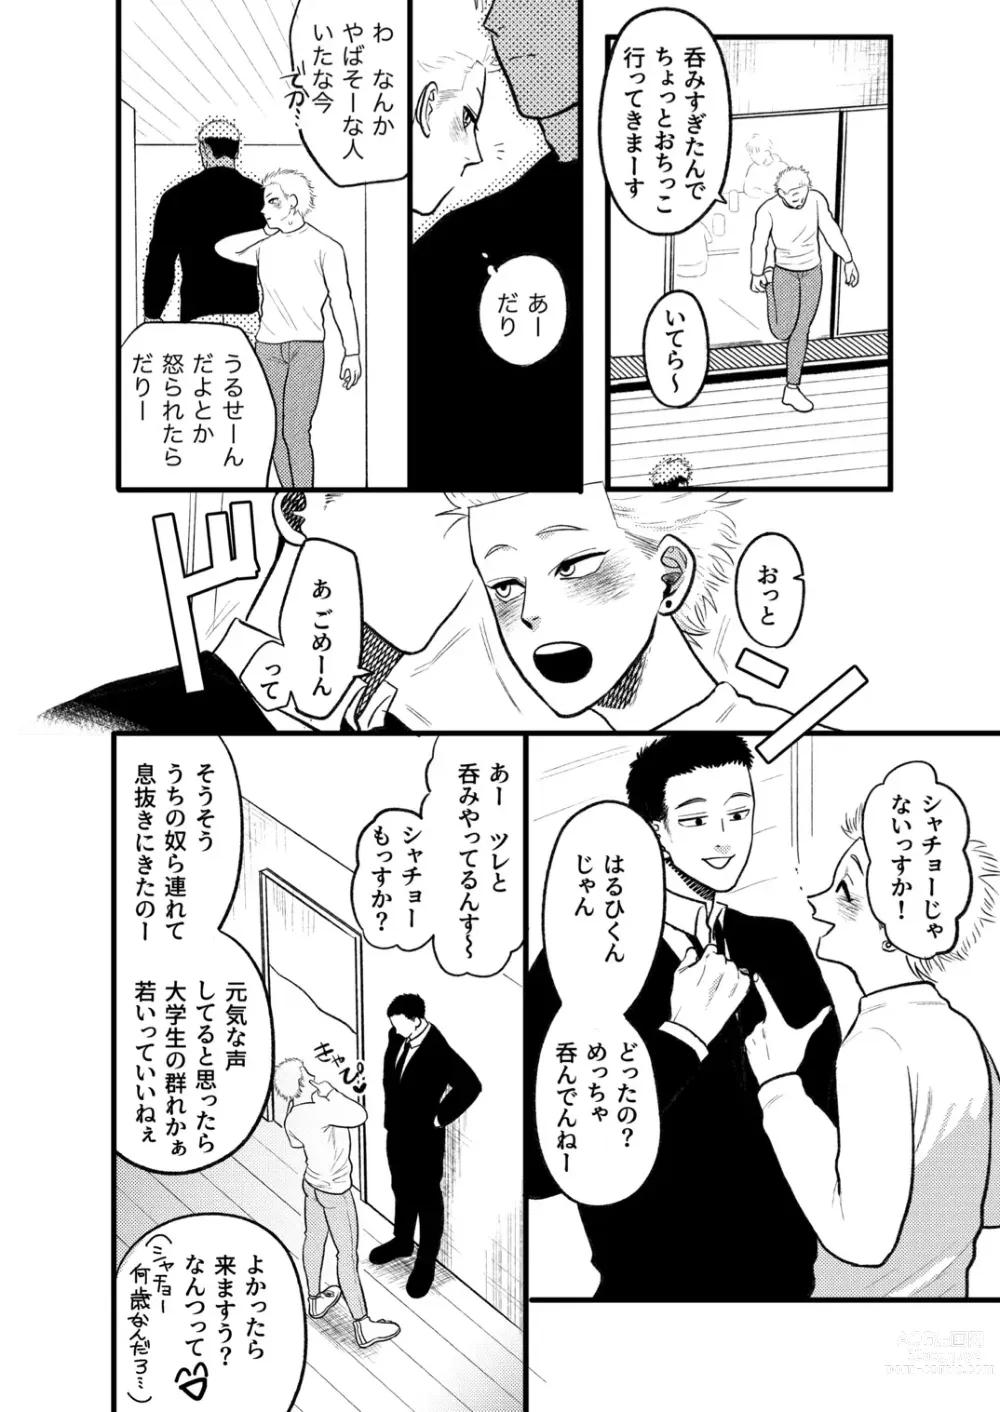 Page 9 of doujinshi Kashikoi Okane no Kasegikata